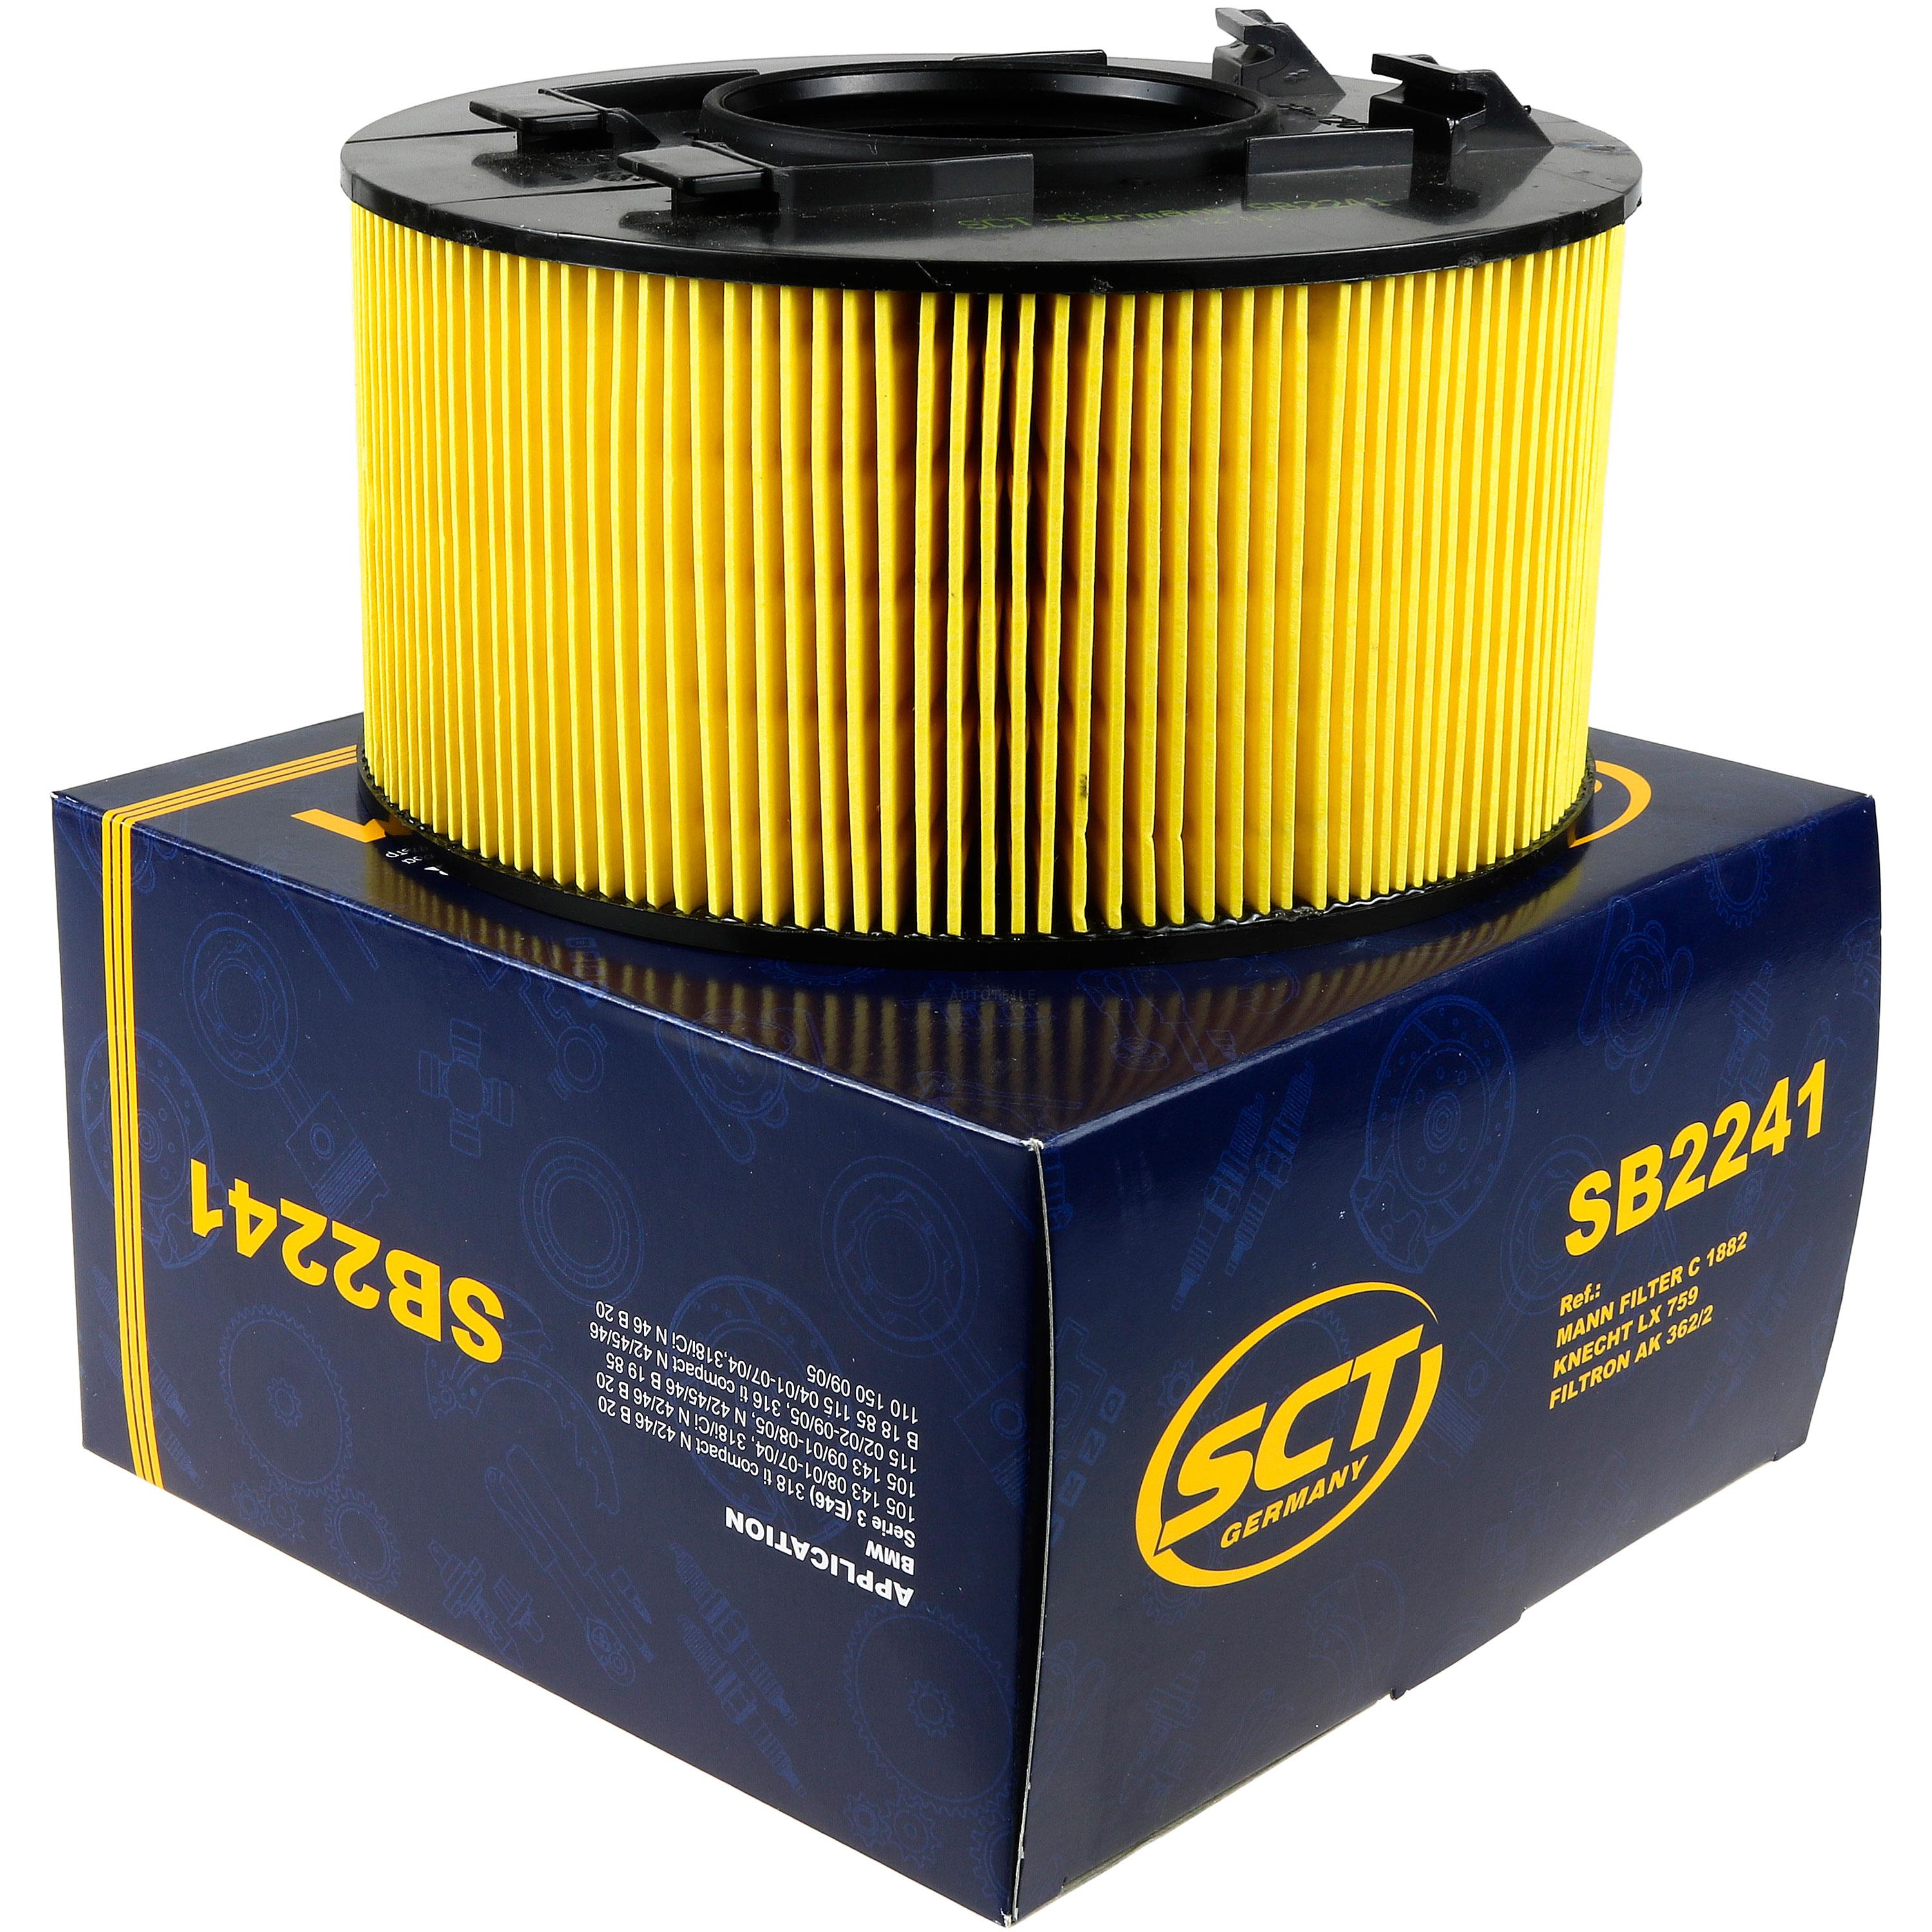 SCT Luftfilter Motorluftfilter SB 2241 Air Filter